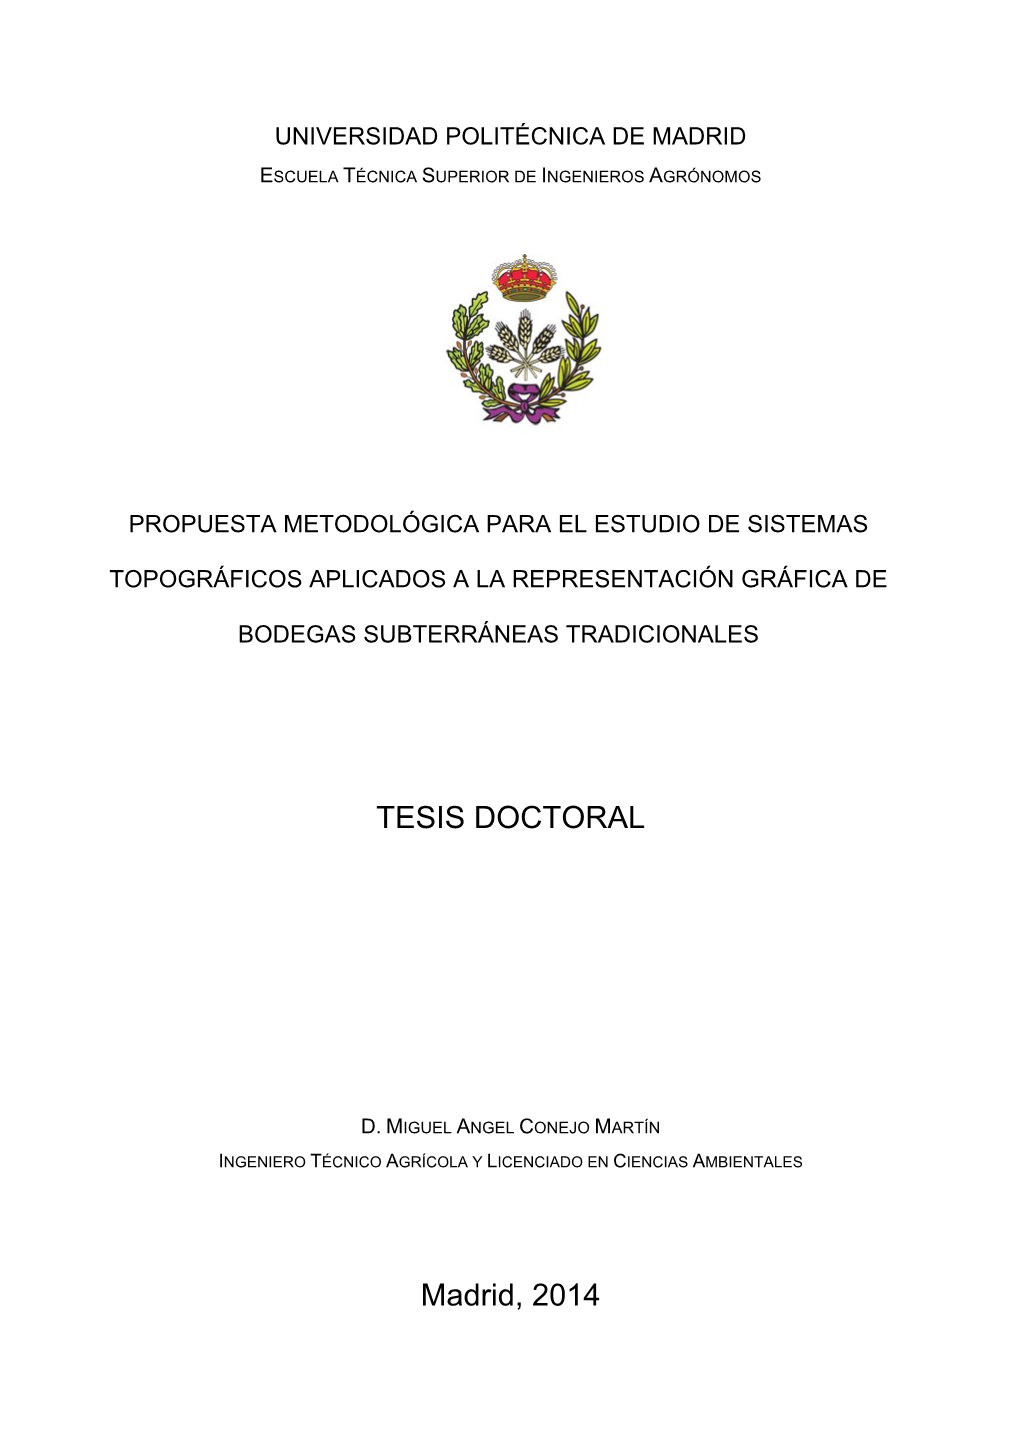 TESIS DOCTORAL Madrid, 2014